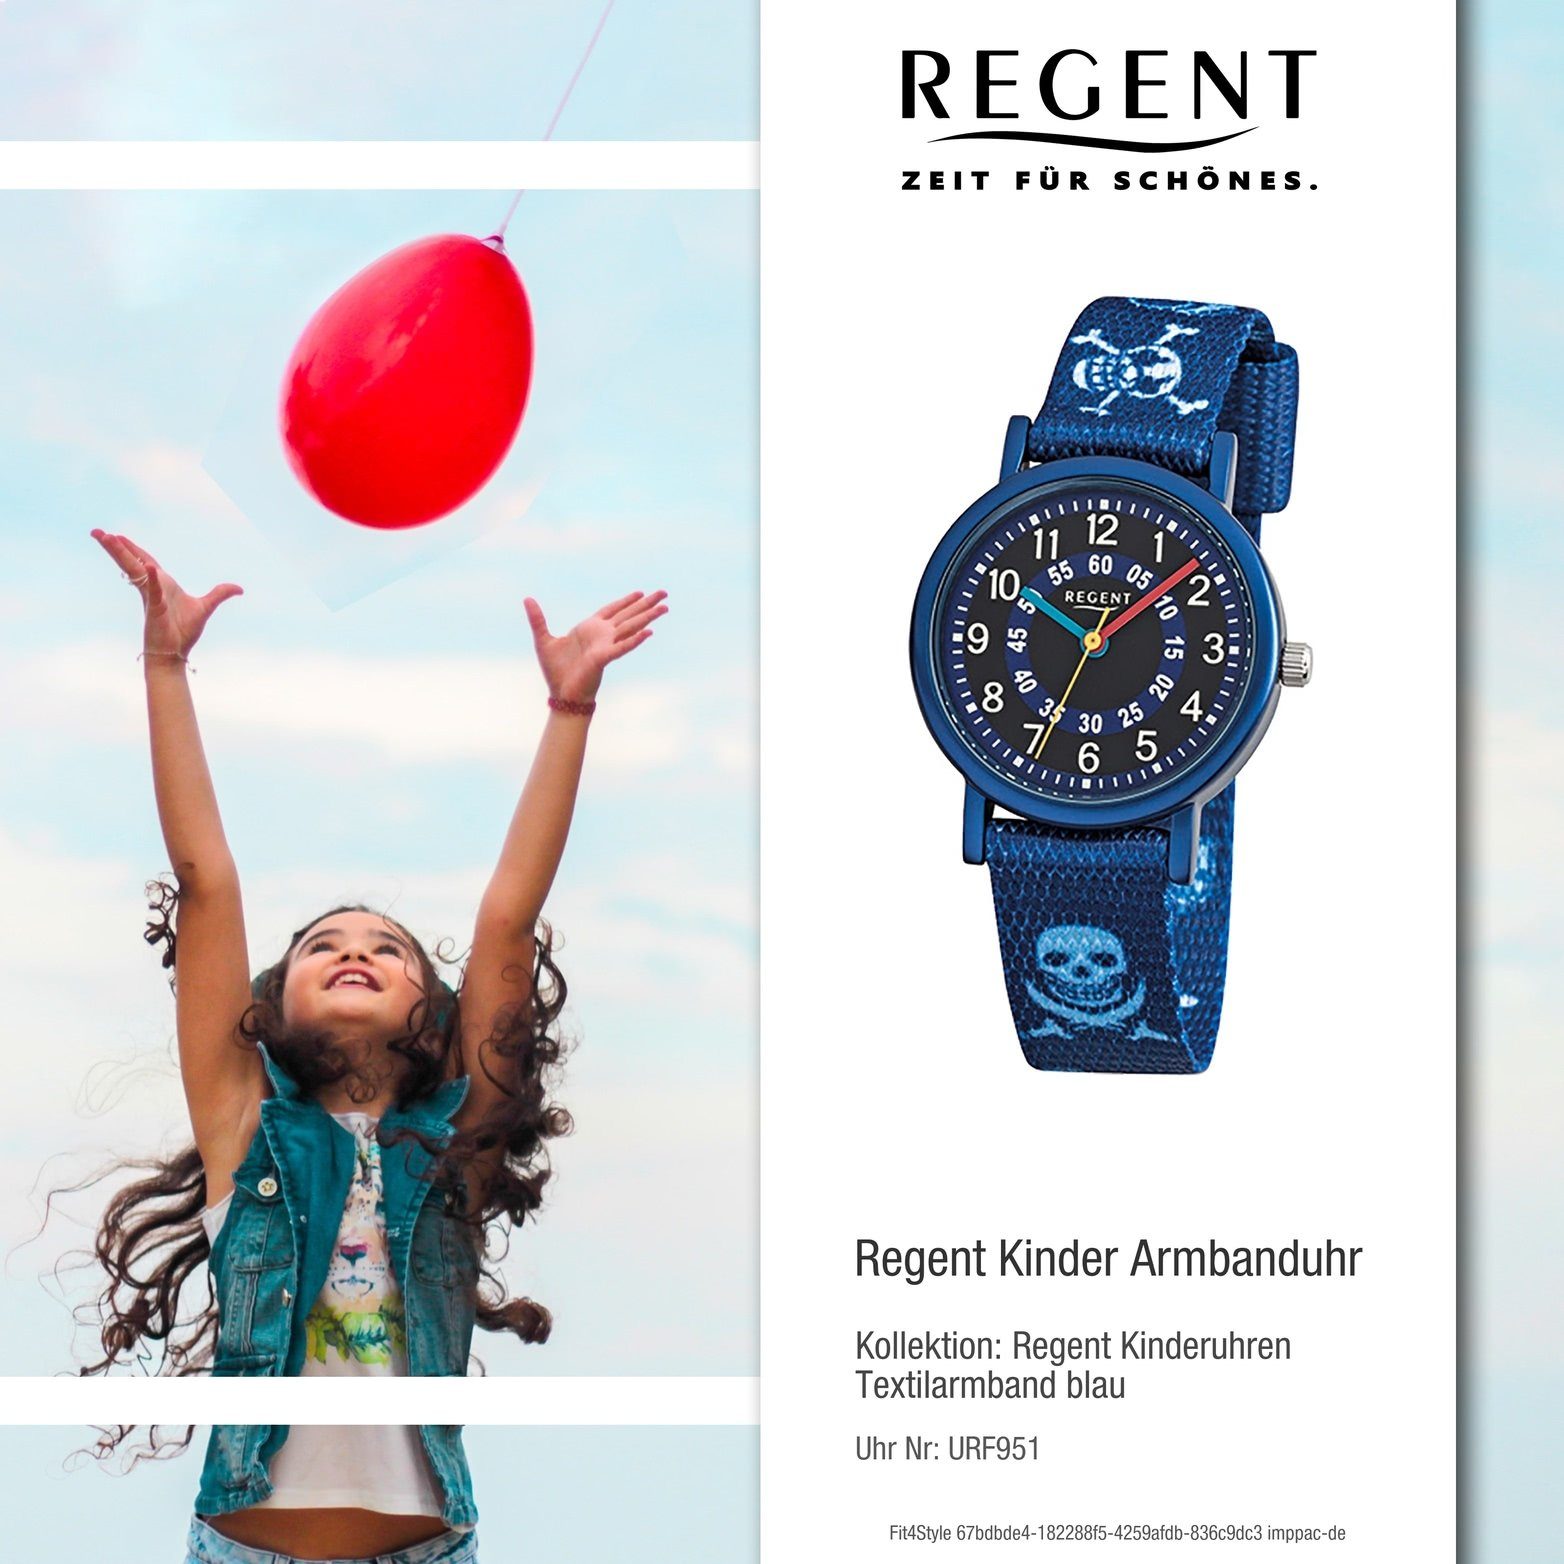 29mm), Regent Textilarmband, Uhr klein Kinder Elegant-St (ca. Textil Quarzuhr Quarzuhr, Regent rund, Kinderuhr Aluminium,